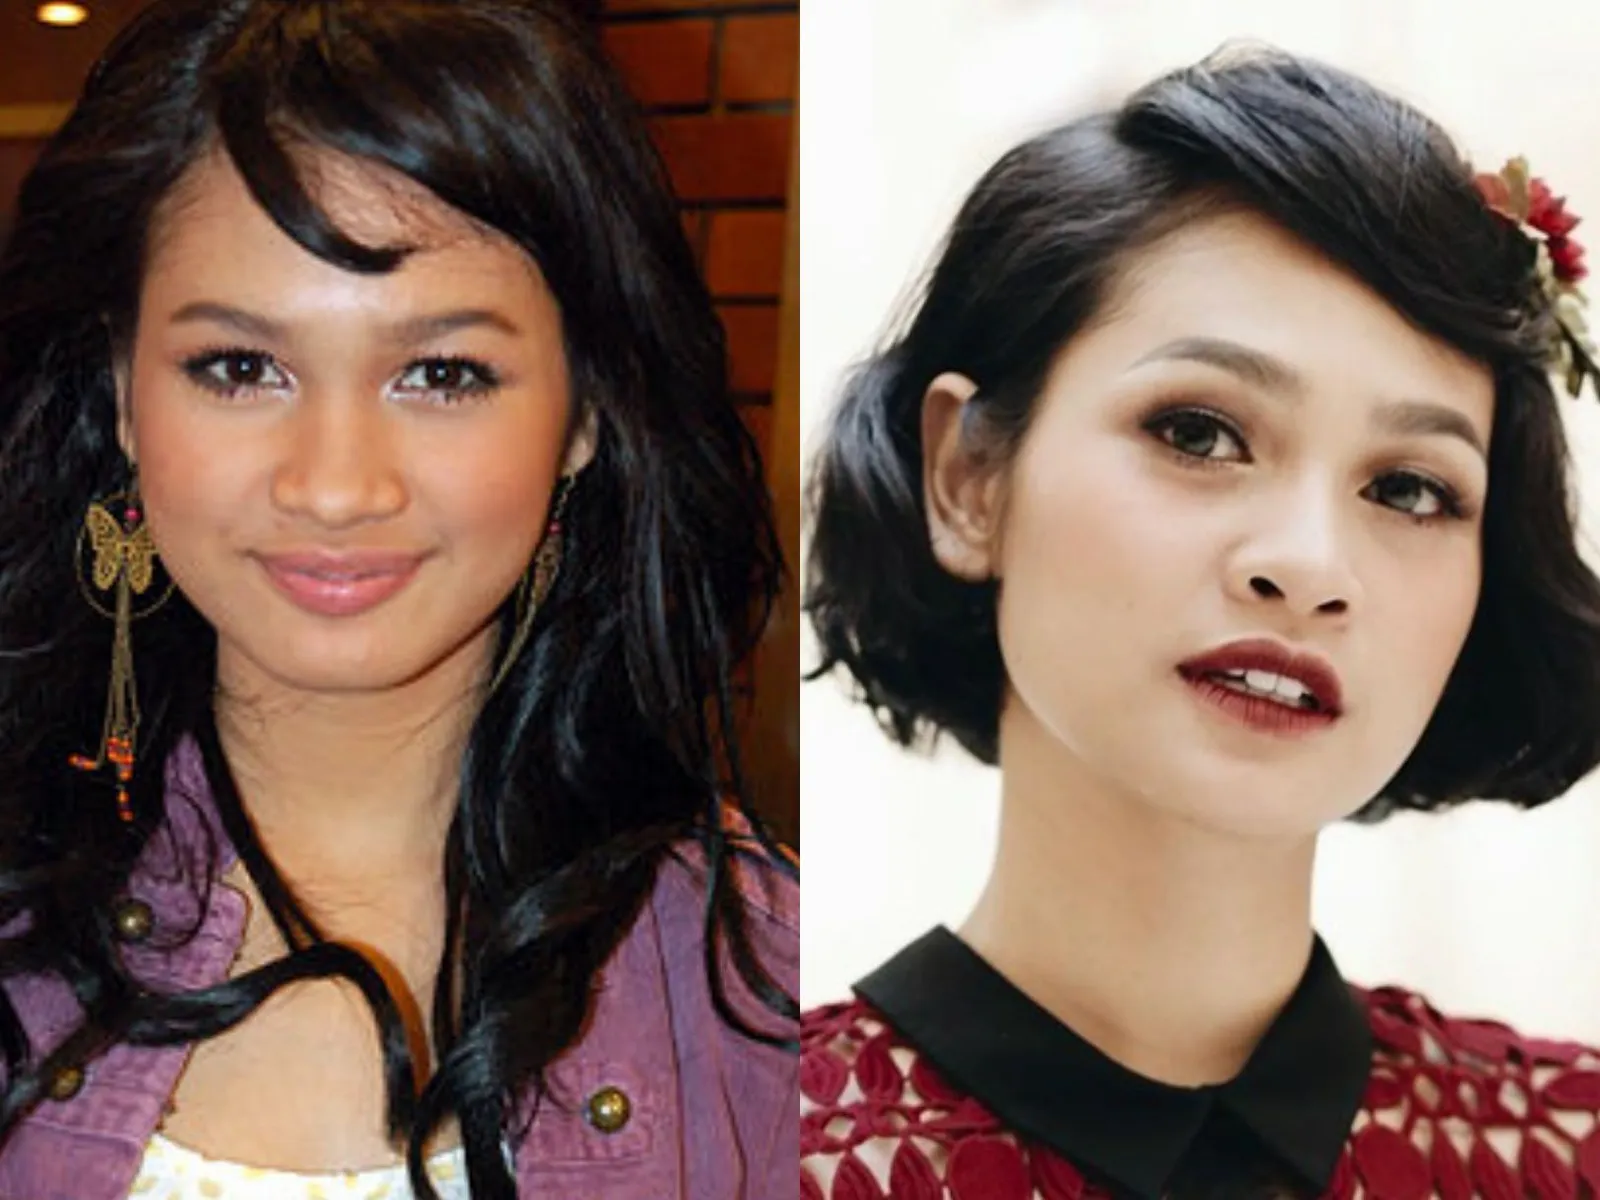 Perbedaan Gaya Makeup Artis Dulu dan Sekarang, Beda Banget!